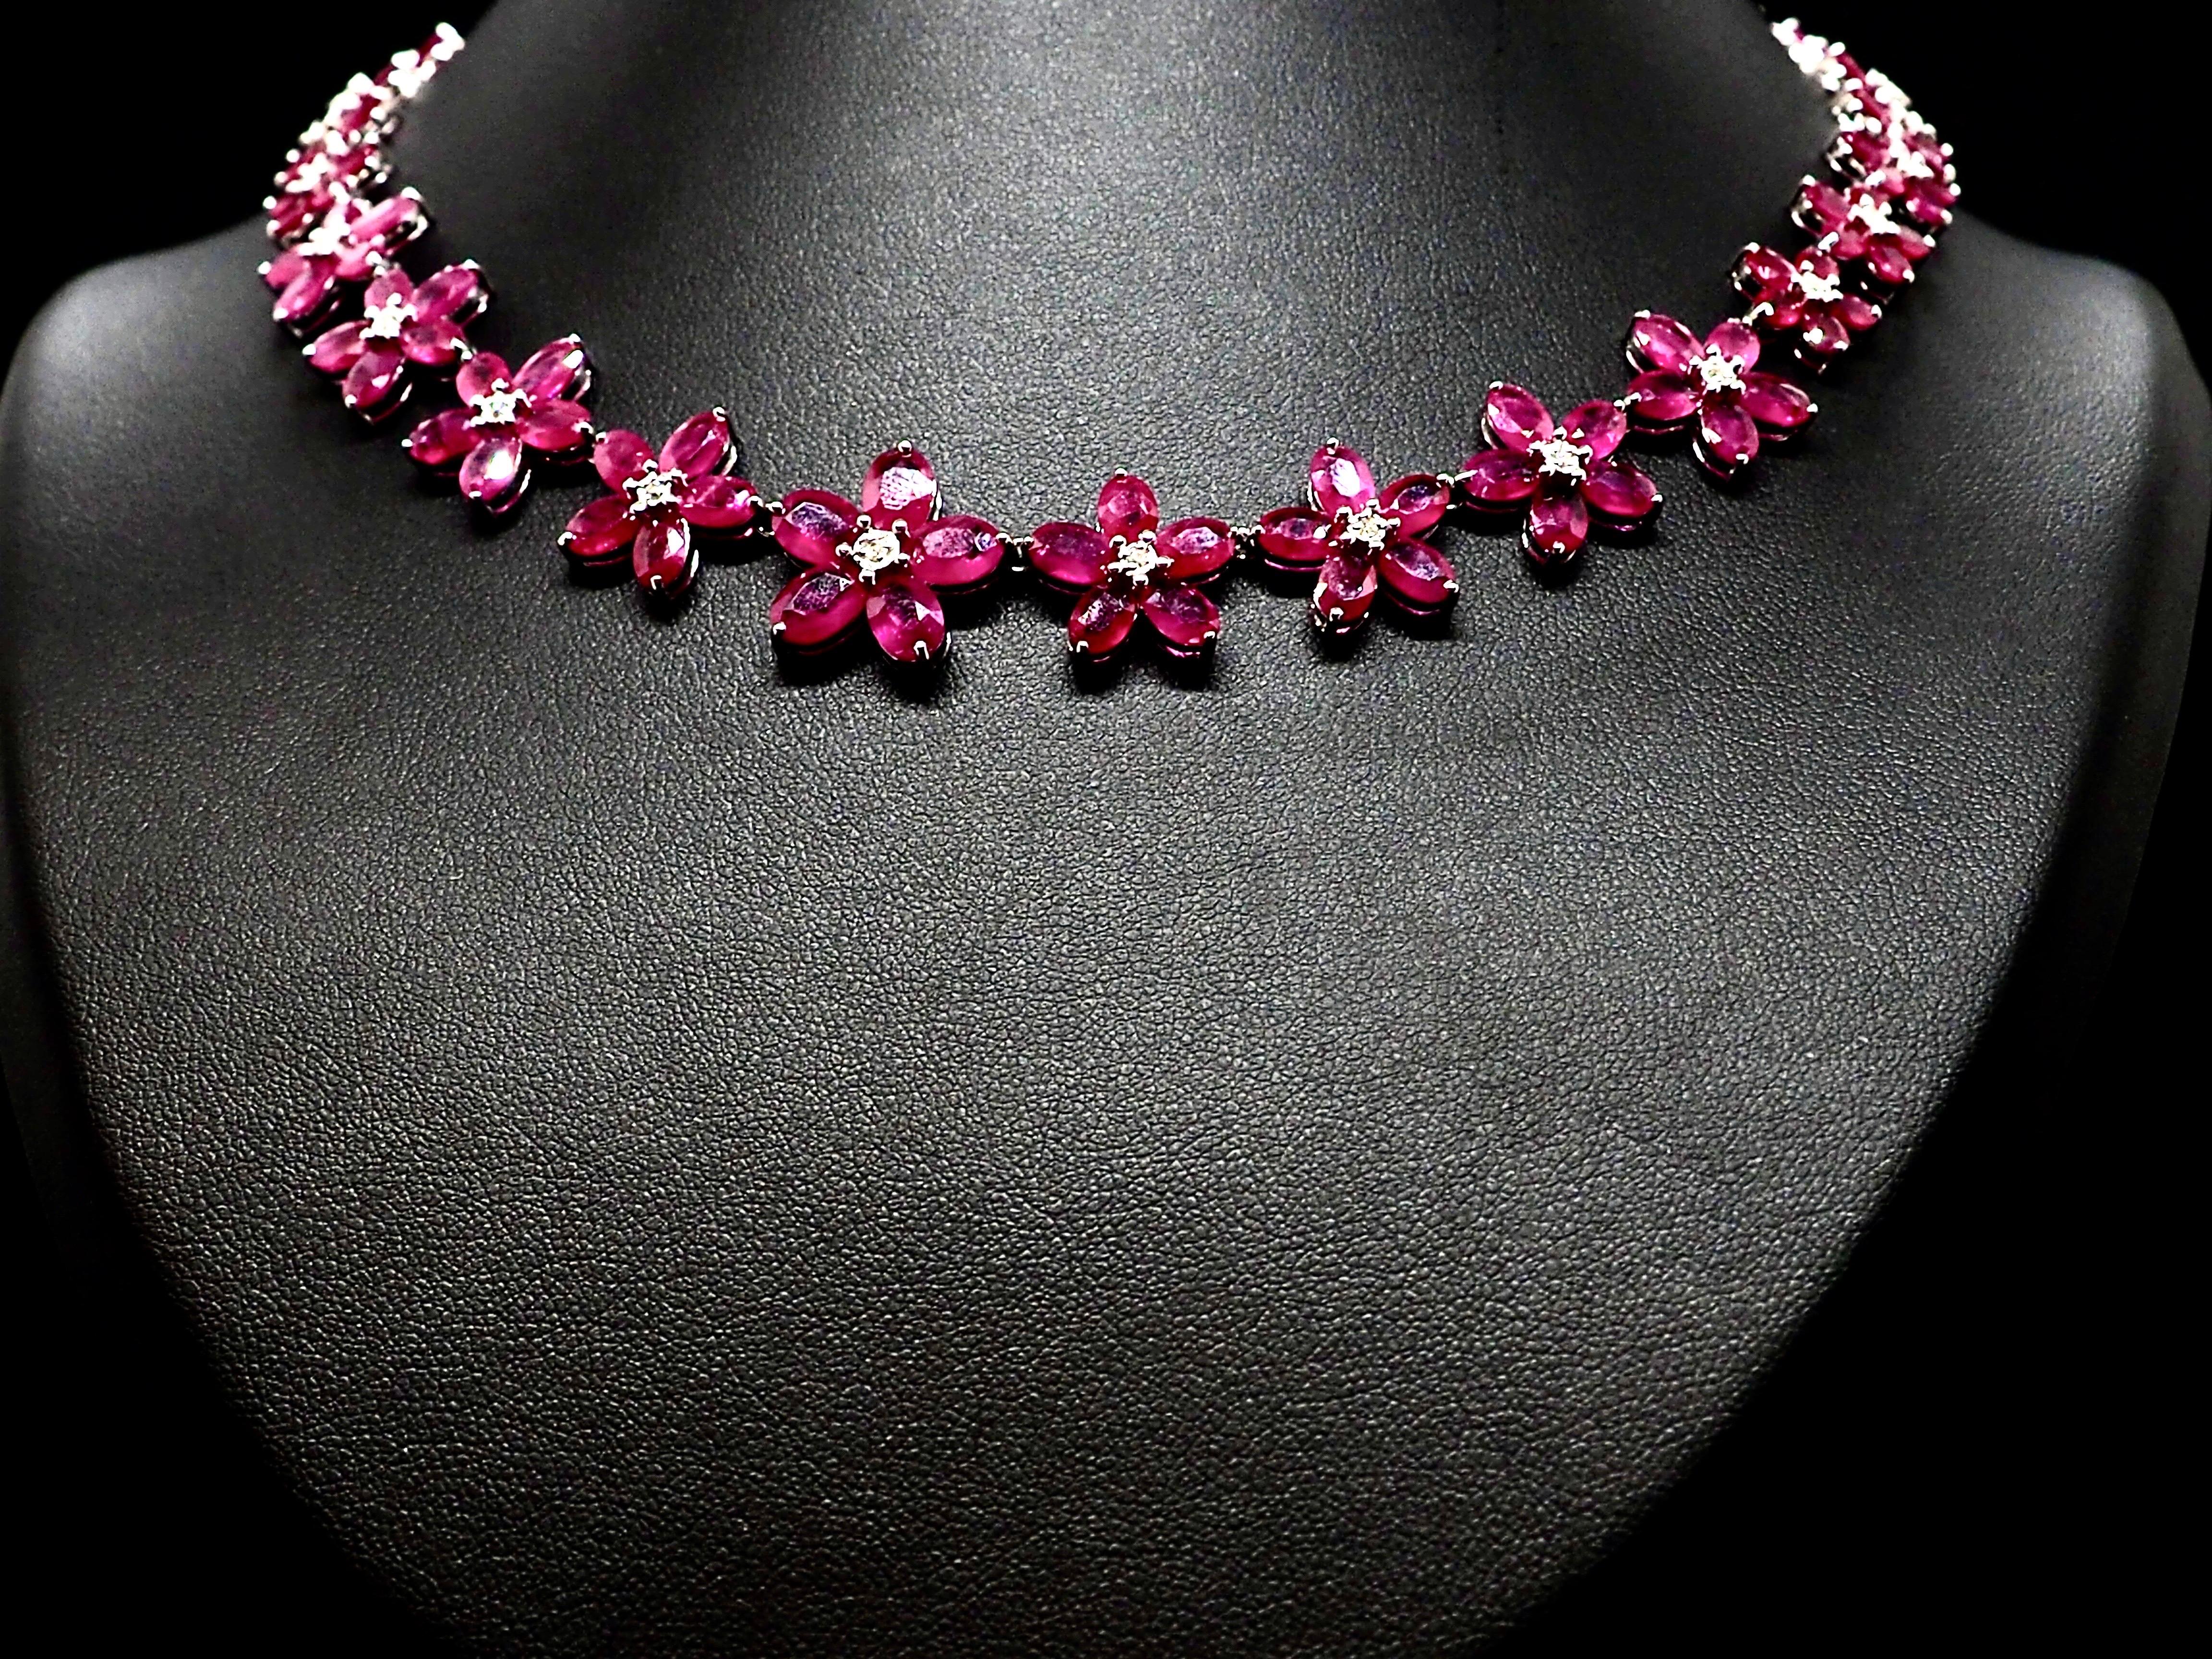 Briolette Cut Ruby Diamond Floral Necklace 18 Karat White Gold For Sale